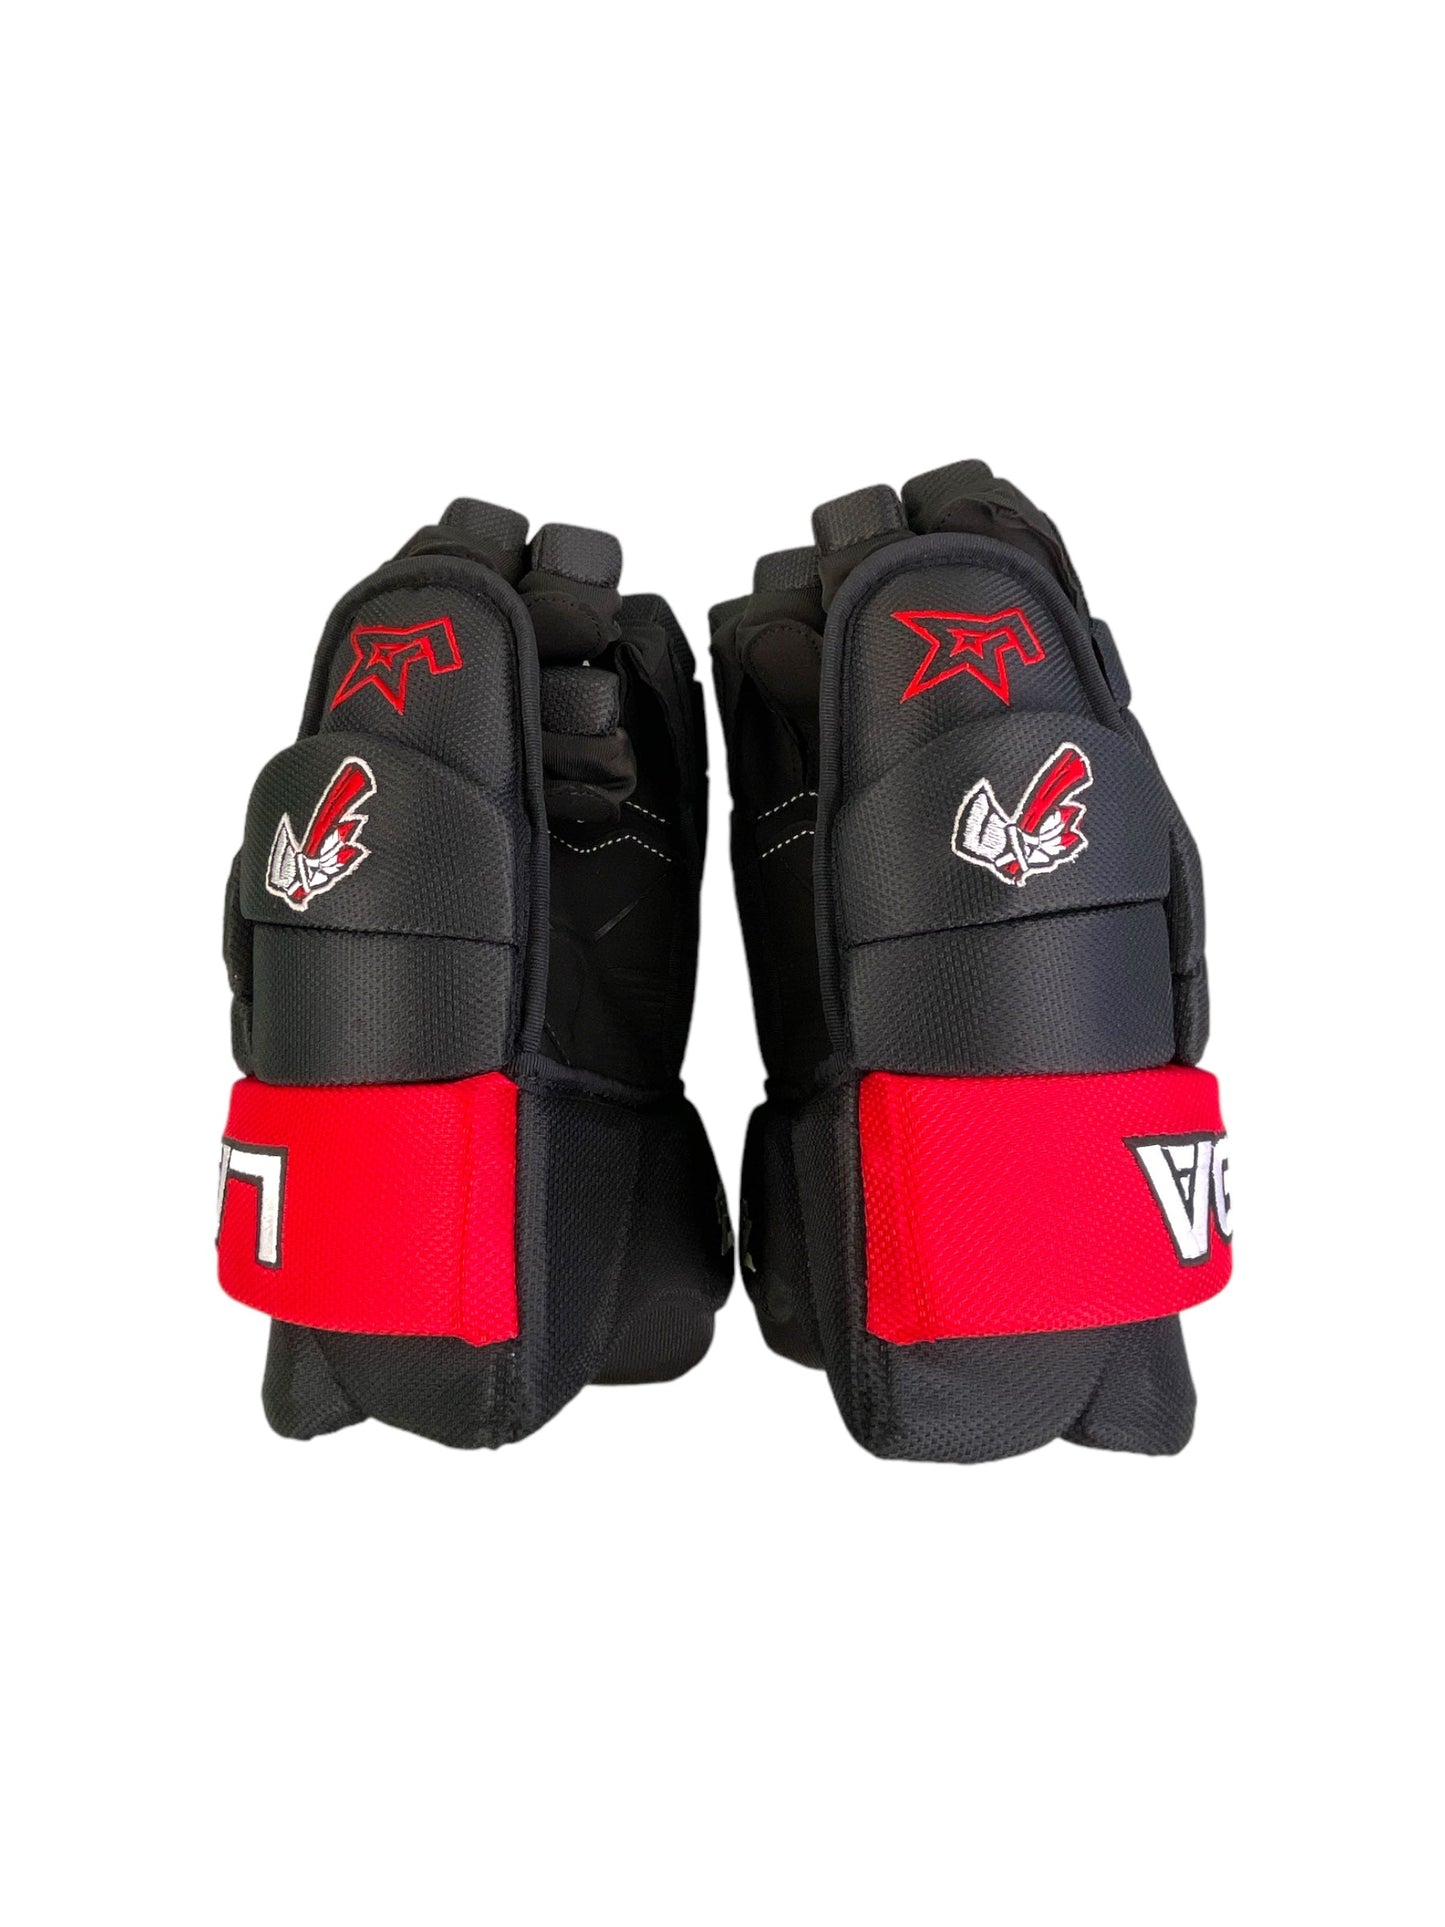 Hockey Glove Pama Pro Series- Red/Black